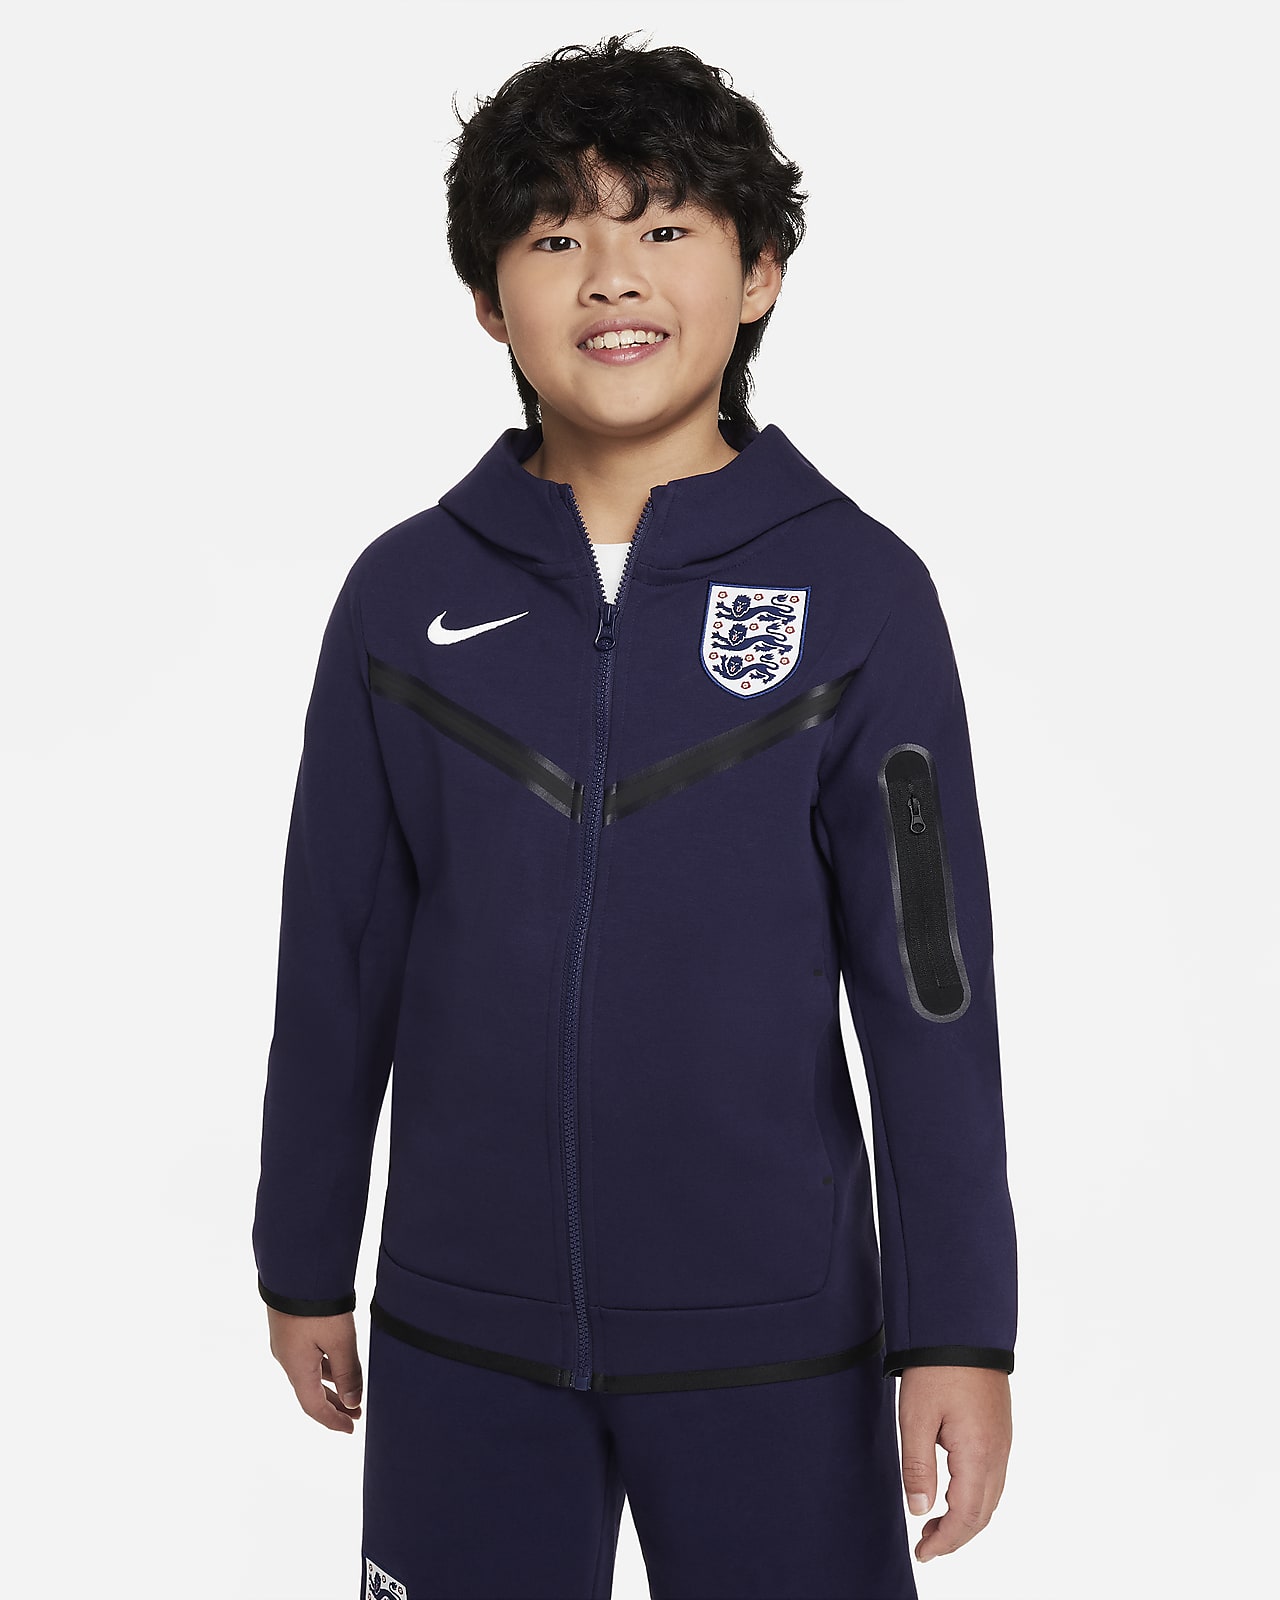 England Tech Fleece Nike Fußball-Hoodie mit durchgehendem Reißverschluss für ältere Kinder (Jungen)